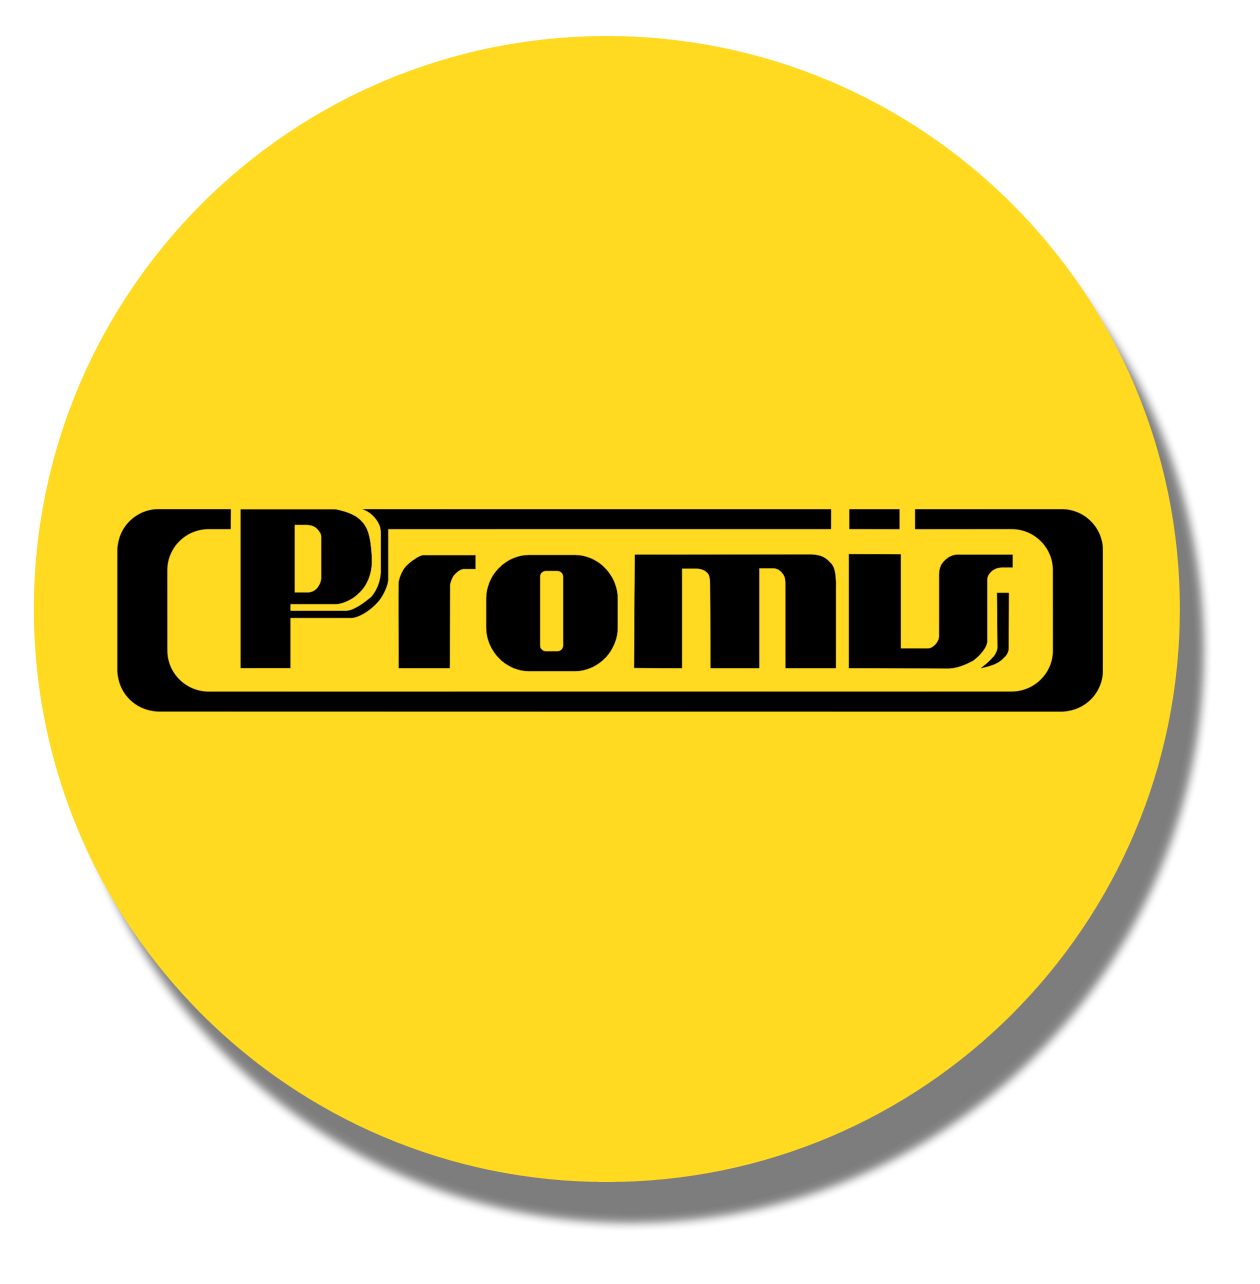 Promis